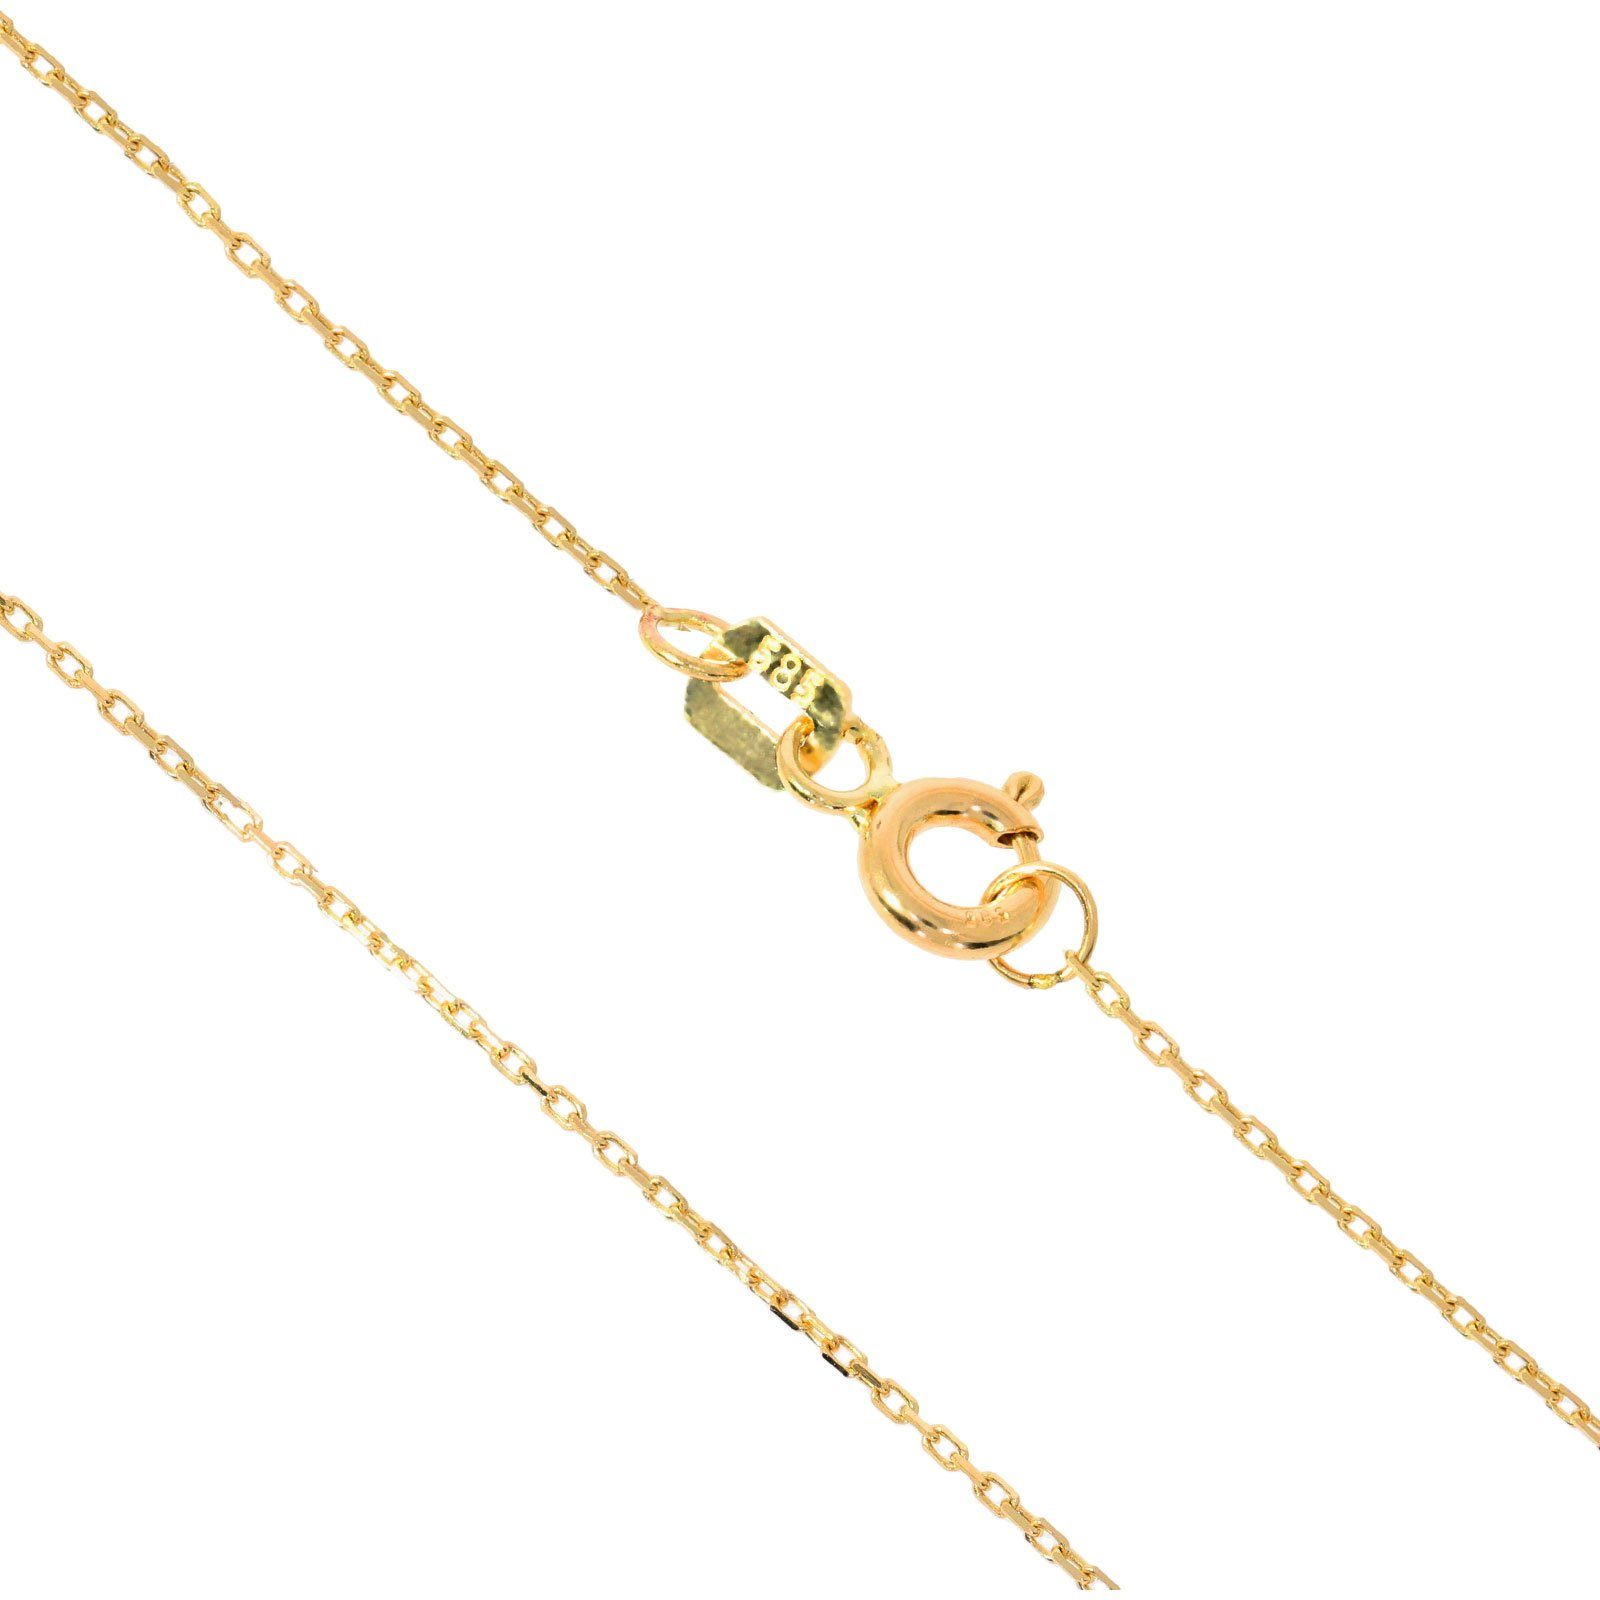 Damen Schmuck Stella-Jewellery Kette mit Anhänger 585er Gelbgold Kette mit Herz Anhänger Zirkonia (inkl. Etui), Collierkette mit